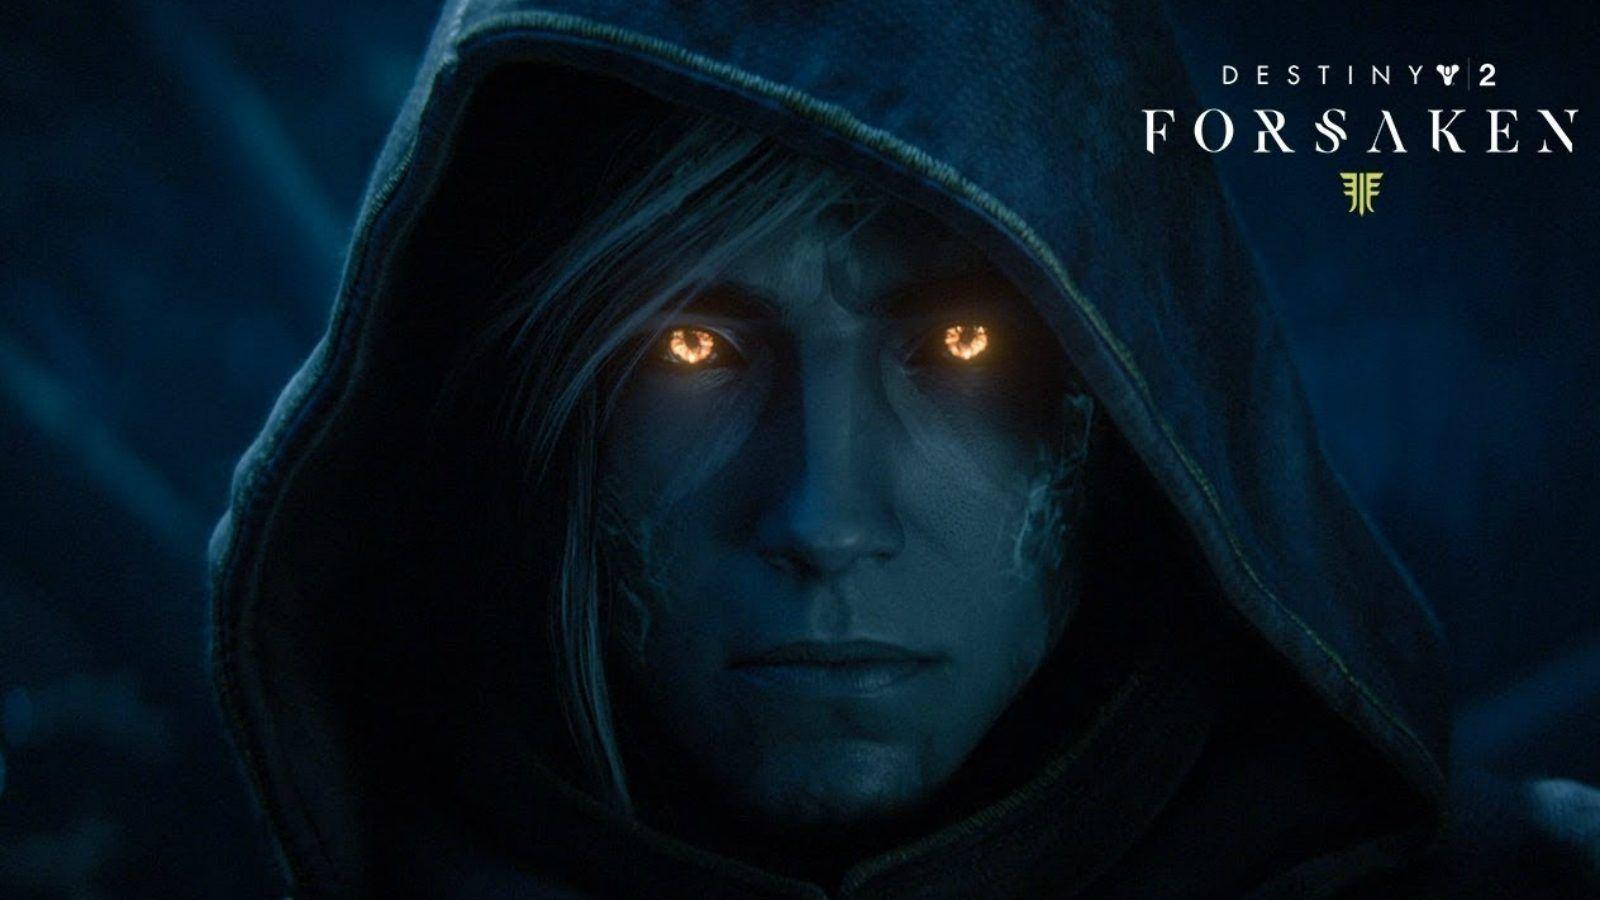 New Forsaken For Destiny 2 Reveals New Story Details